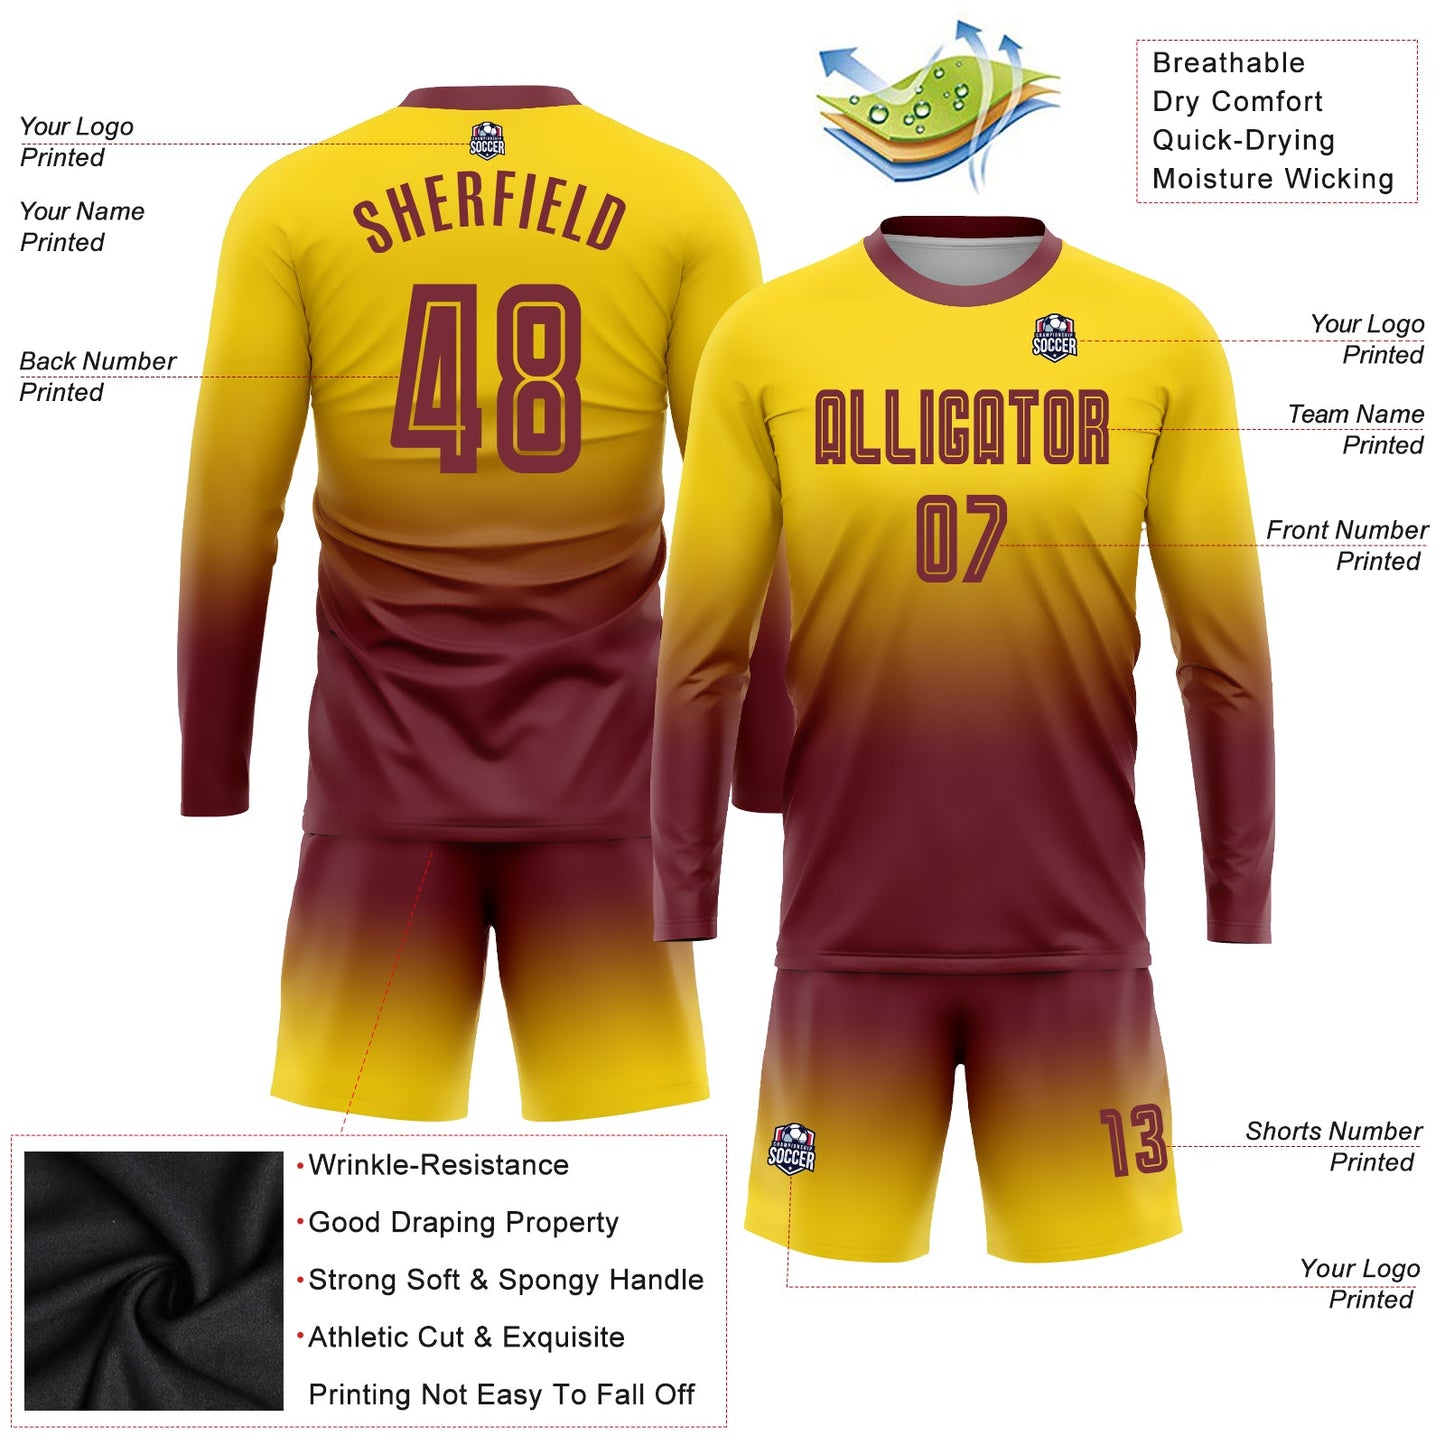 Maillot d'uniforme de football à manches longues, personnalisé, couleur bordeaux doré, fondu, à la mode, par Sublimation